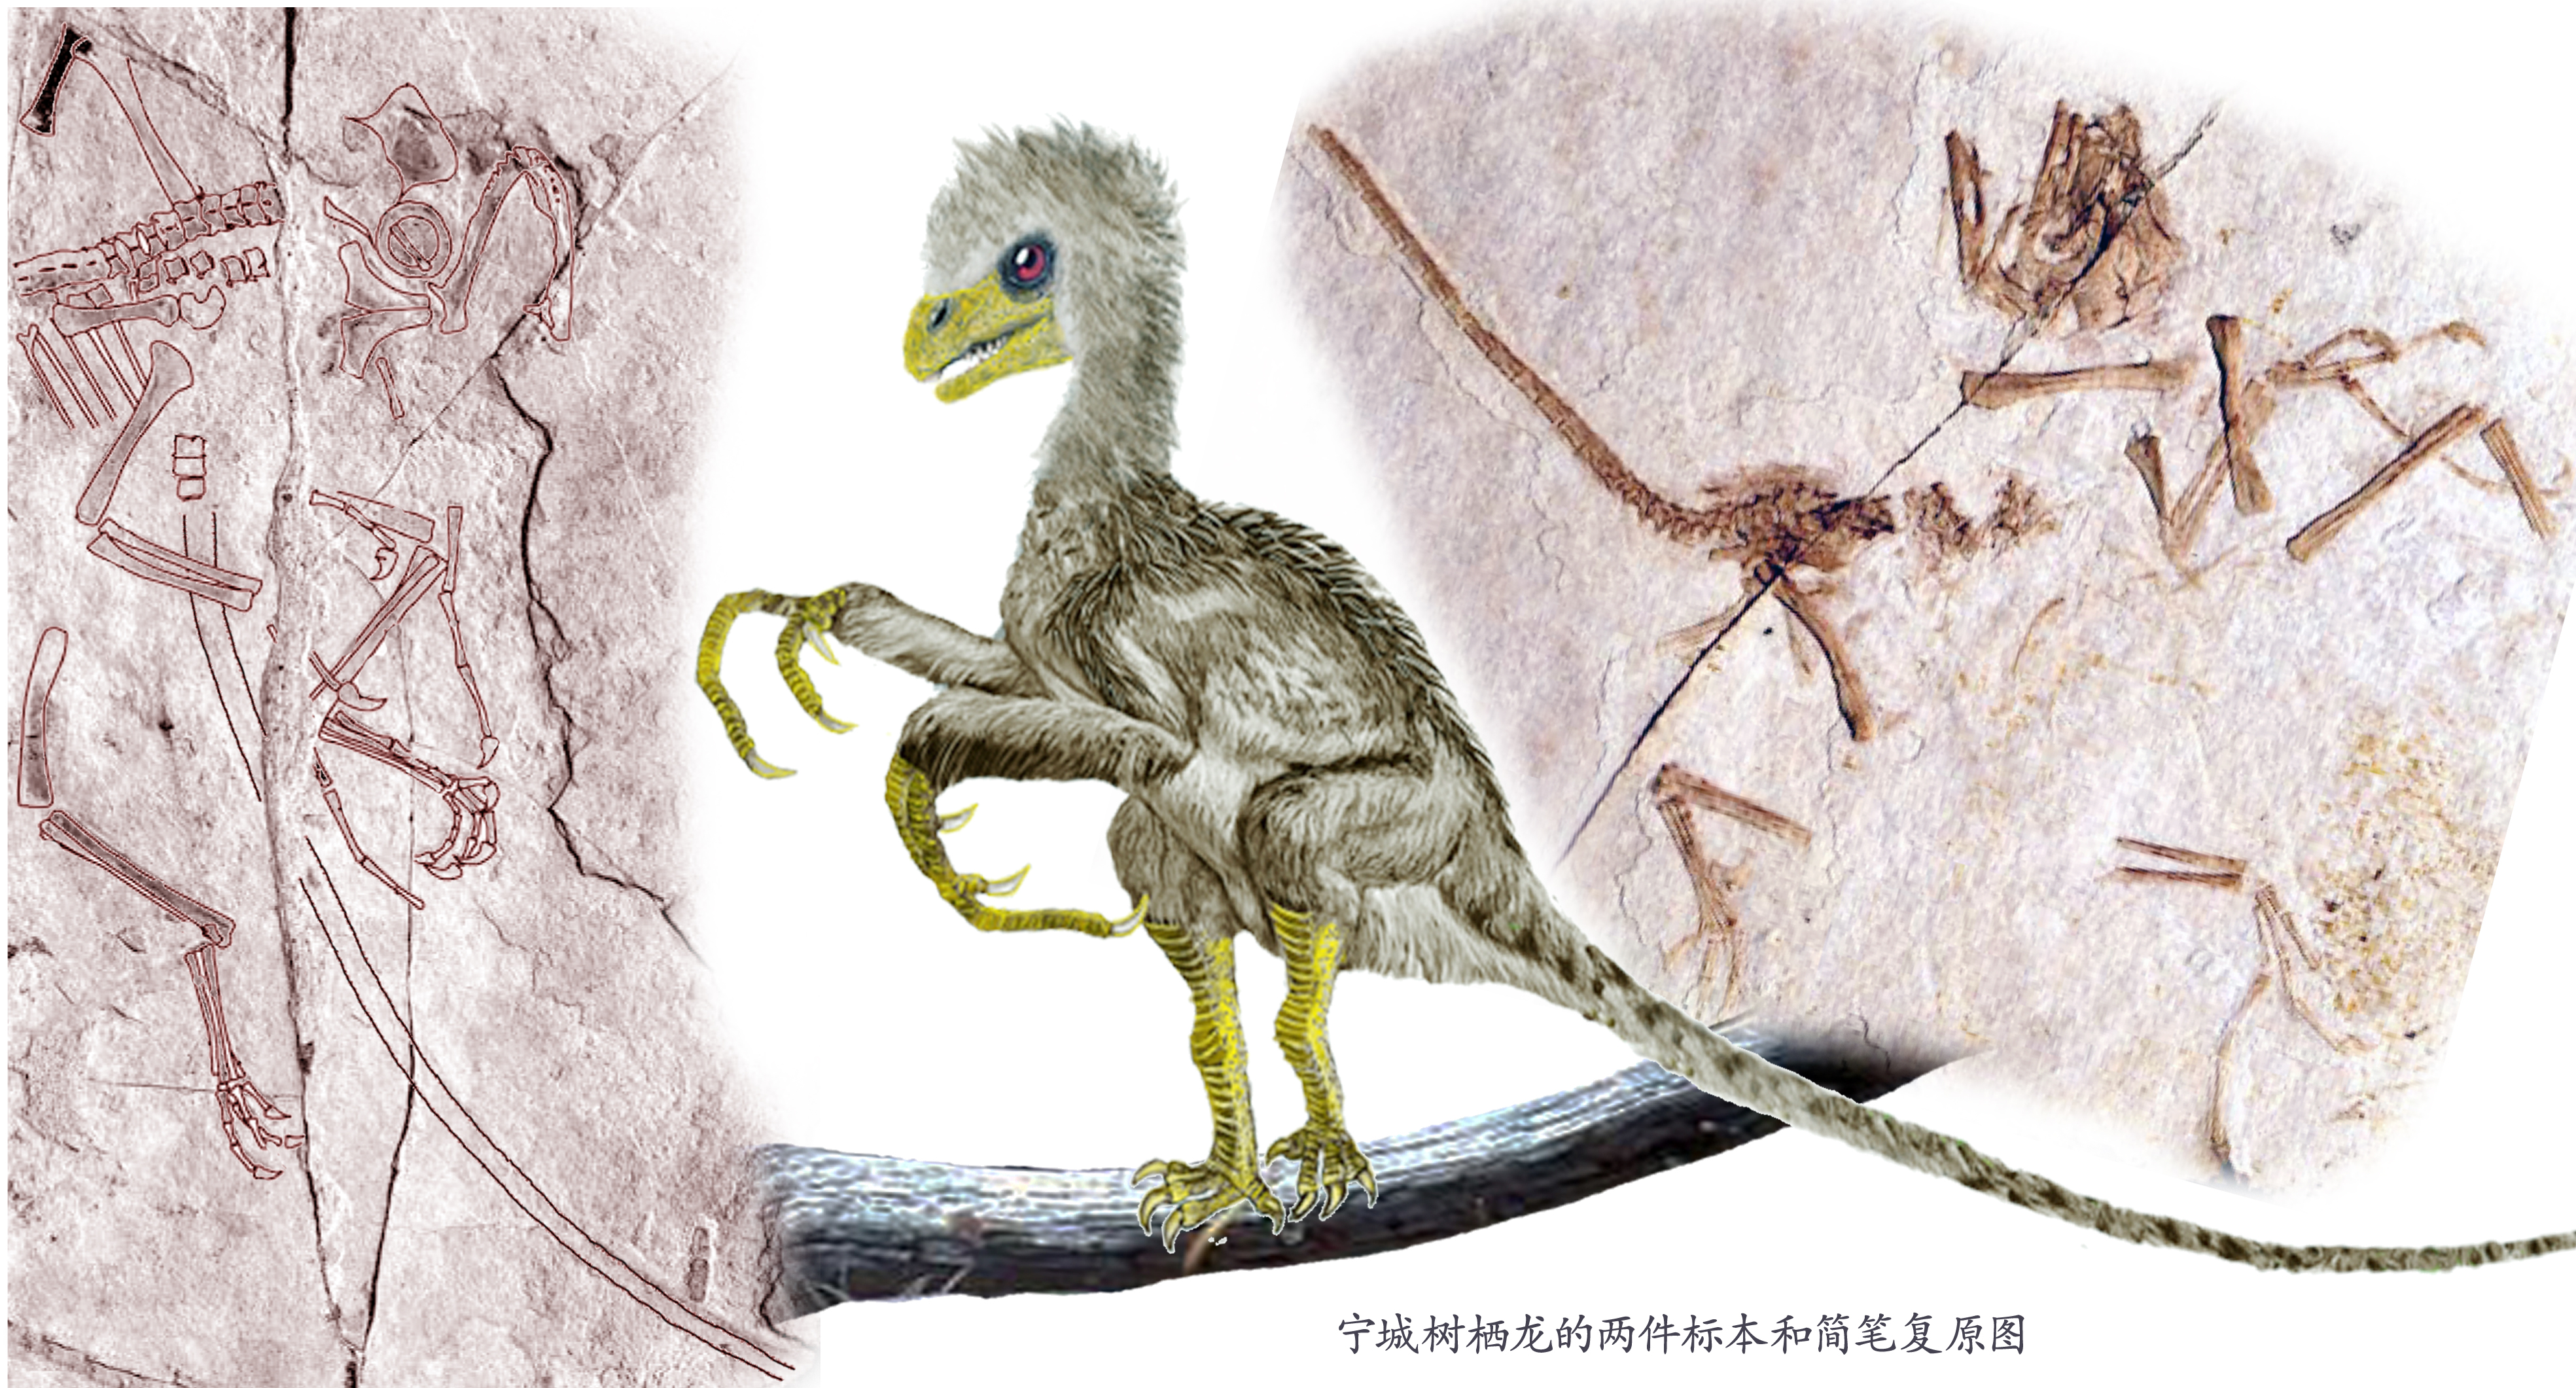 其实,擅攀鸟龙类化石的稀有并不是我们说其神秘的主要原因